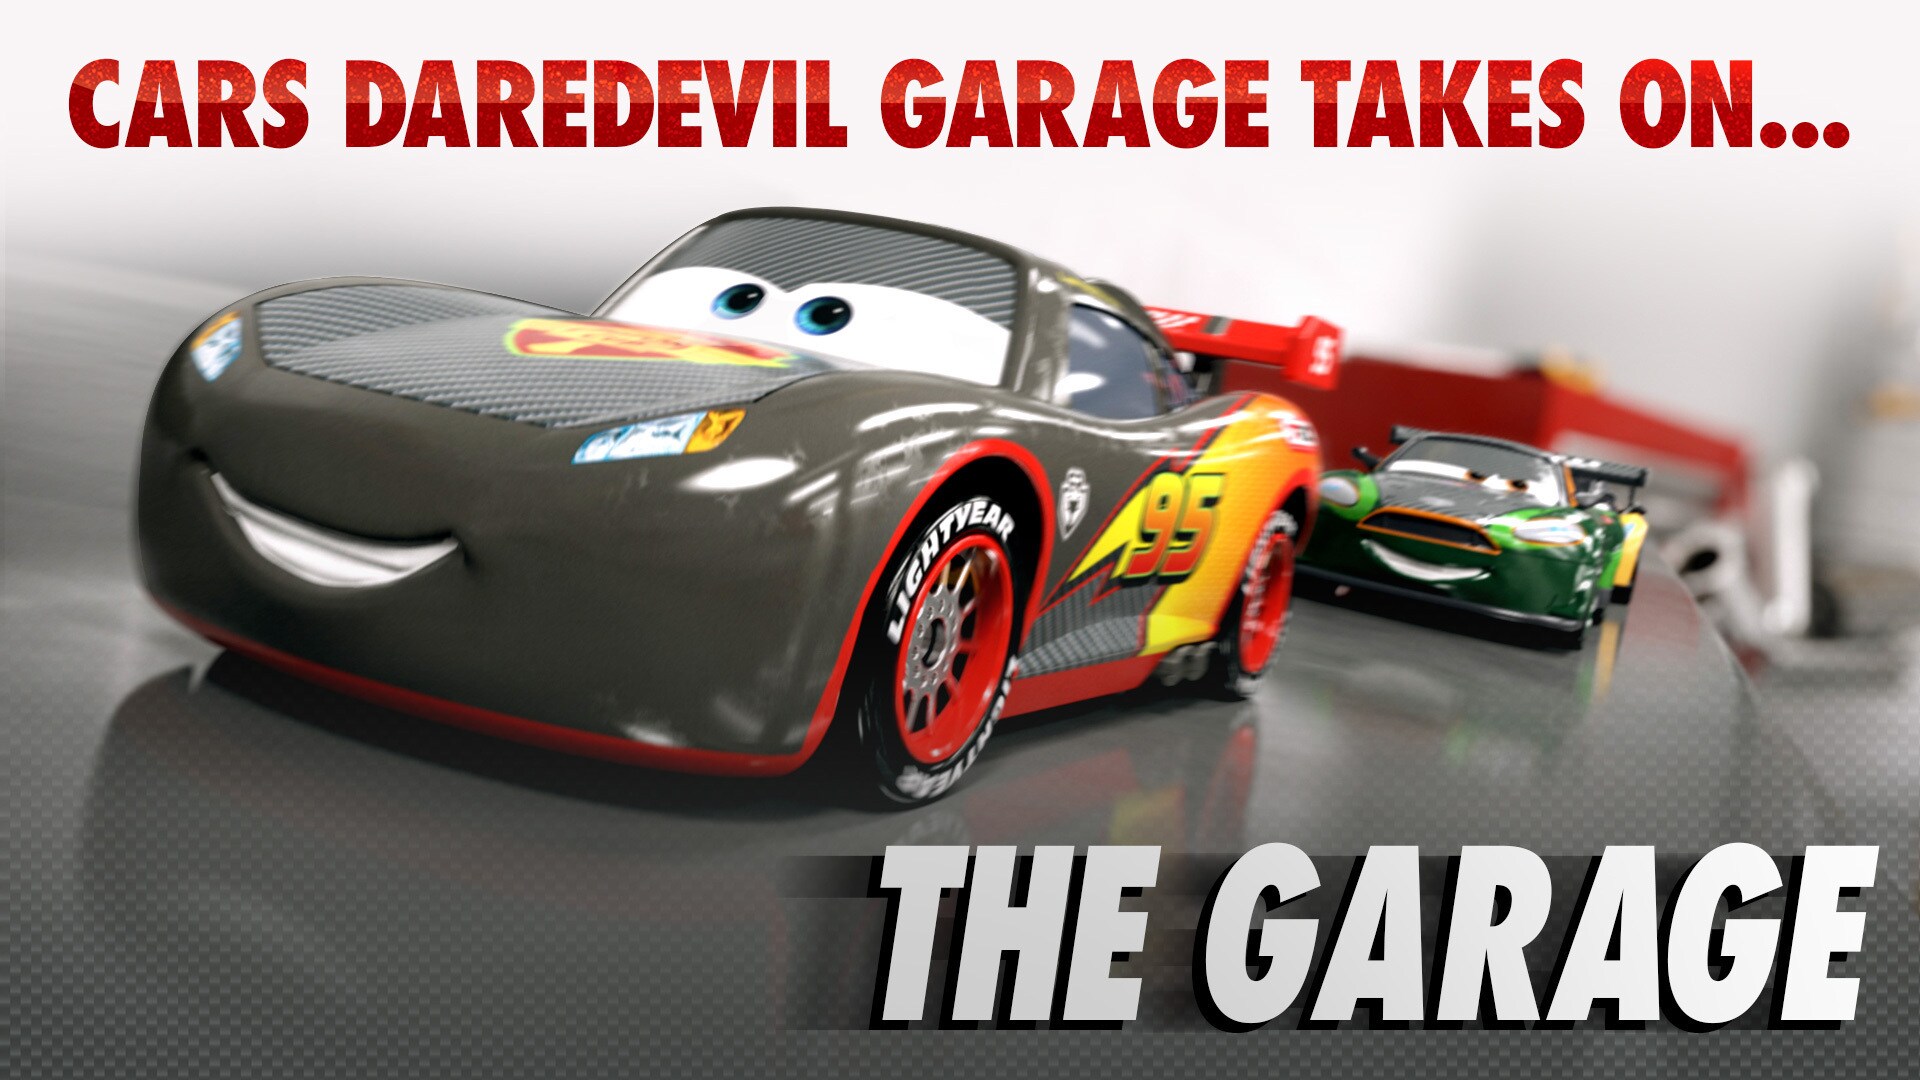 Cars daredevil garage